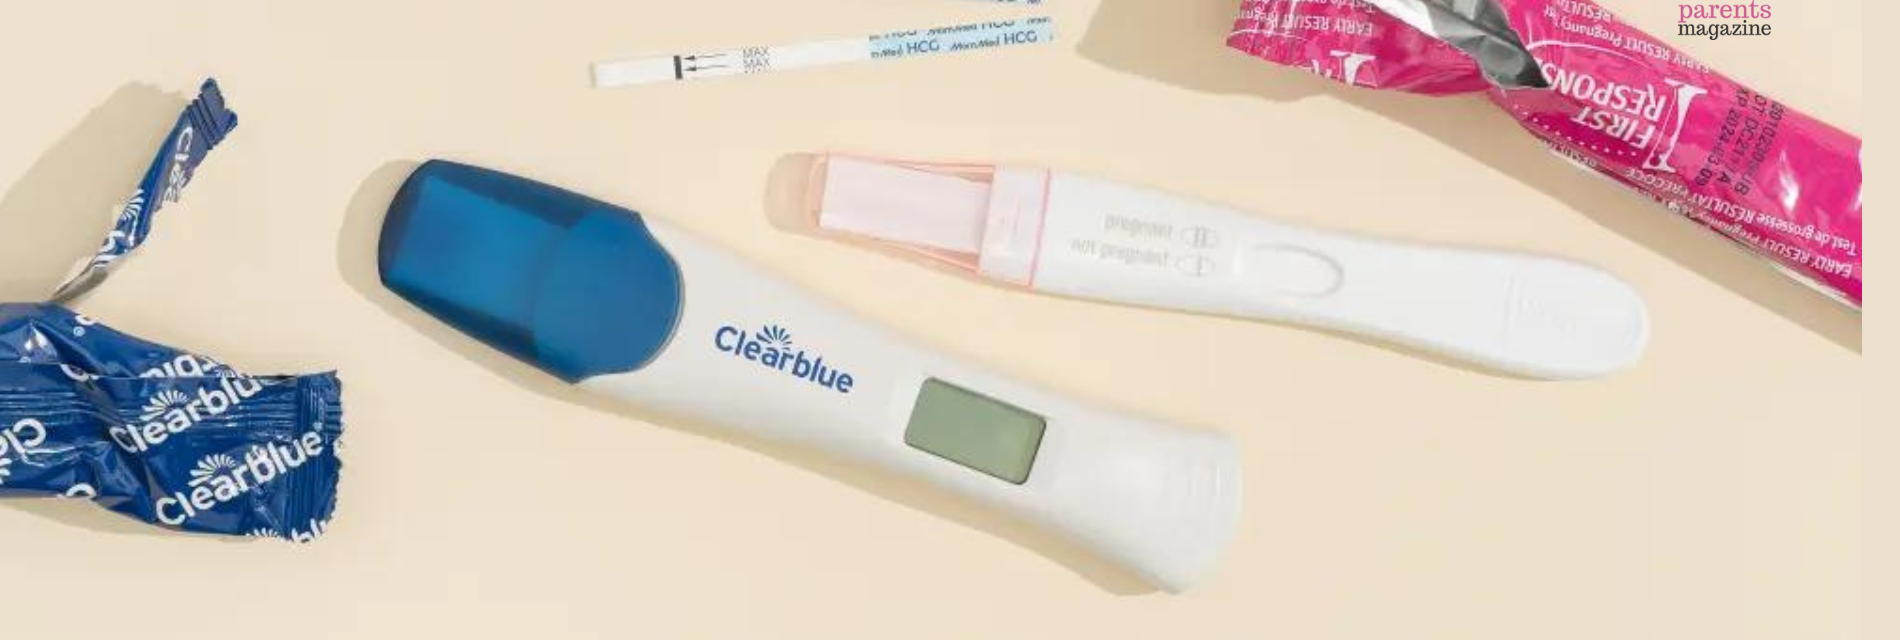 early faint positive pregnancy test clear blue